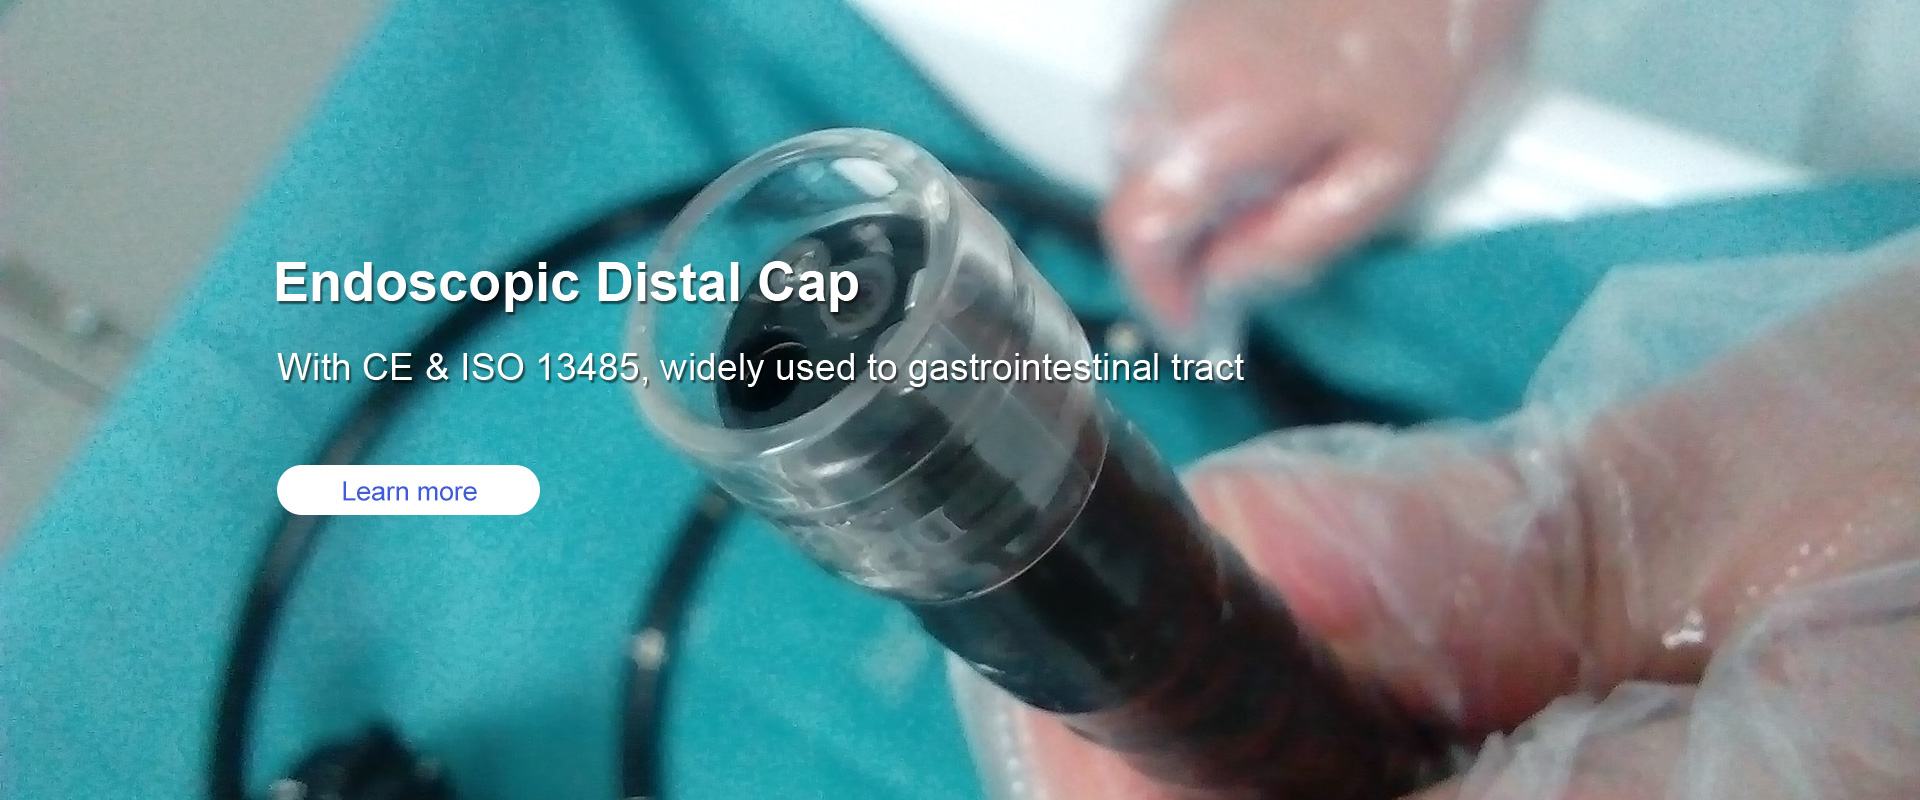 Endoscopic Distal Cap